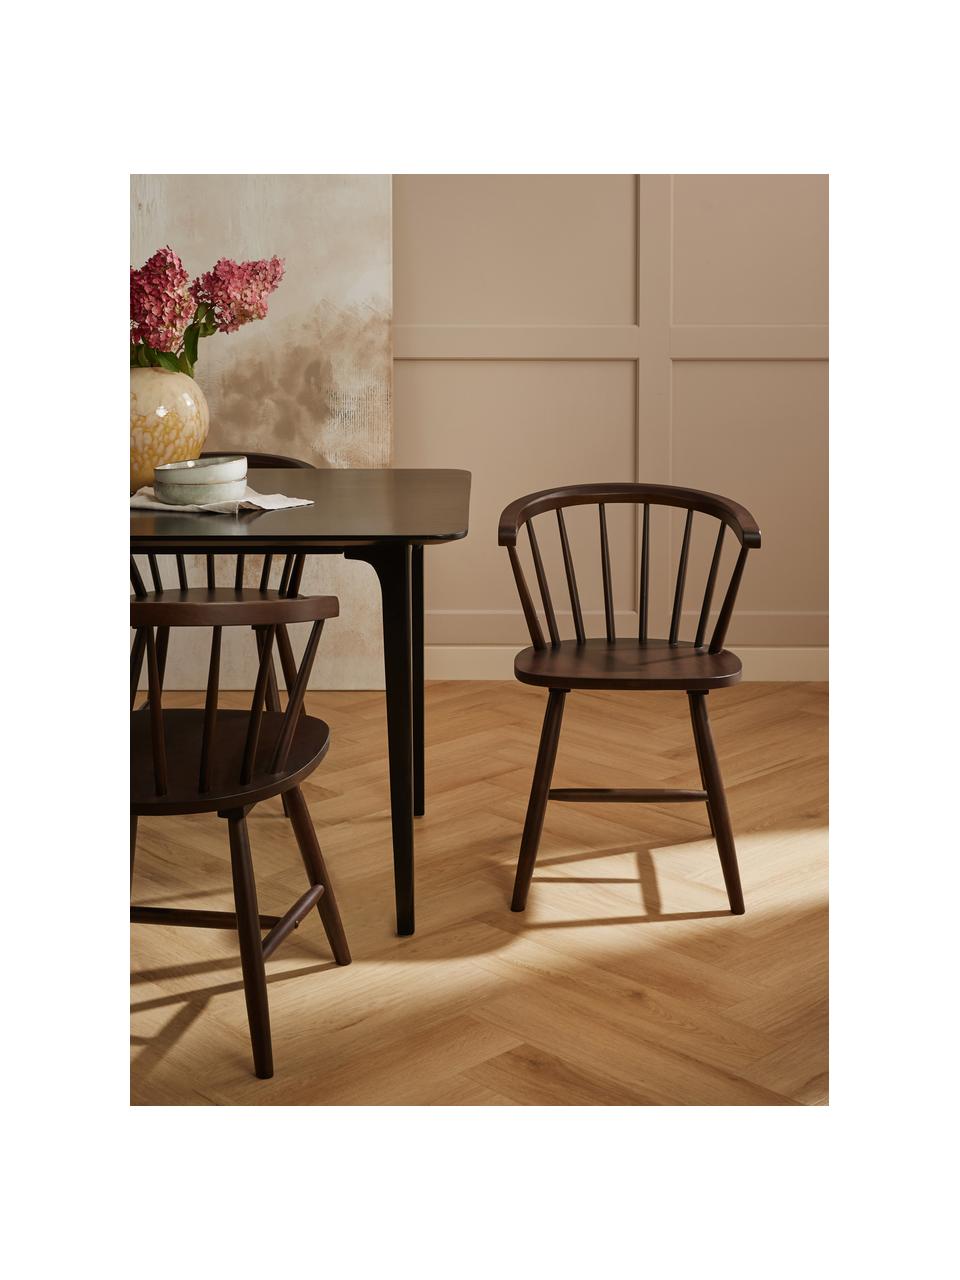 Krzesło z drewna w stylu windsor Megan, 2 szt., Drewno kauczukowe lakierowane, Drewno kauczukowe, brązowy lakierowany, S 53 x G 52 cm